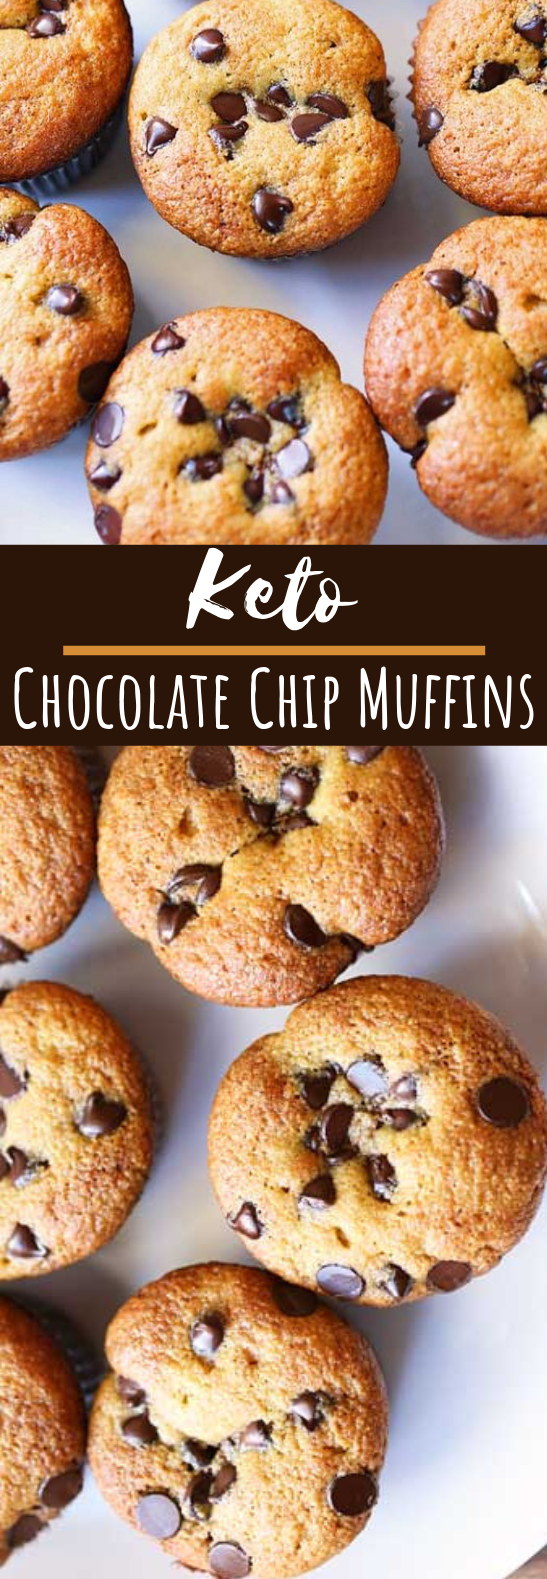 Keto Chocolate Chip Muffins #keto #breakfast